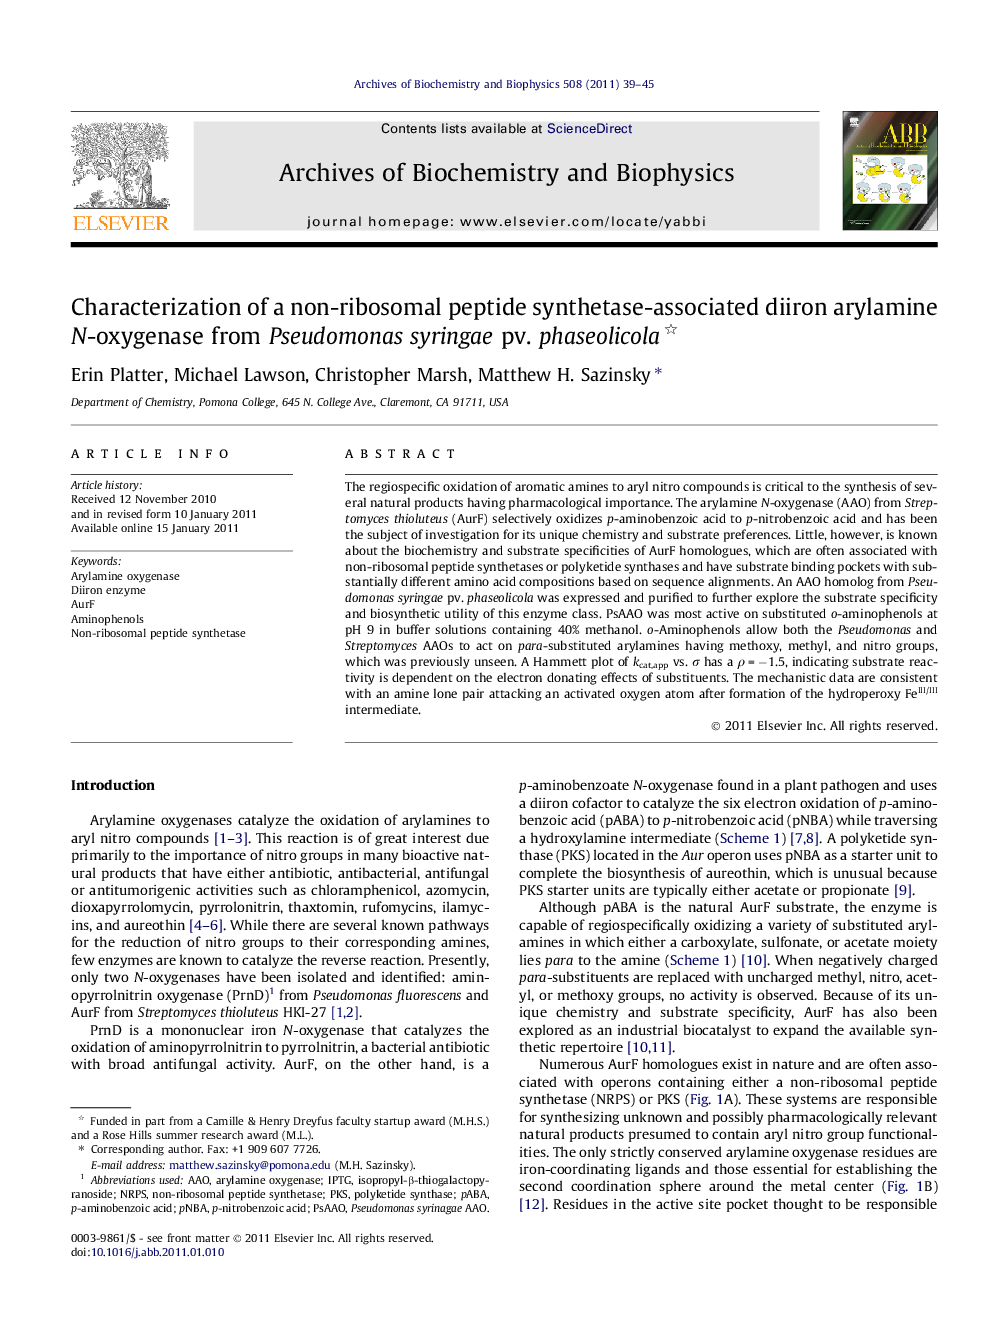 Characterization of a non-ribosomal peptide synthetase-associated diiron arylamine N-oxygenase from Pseudomonas syringae pv. phaseolicola 